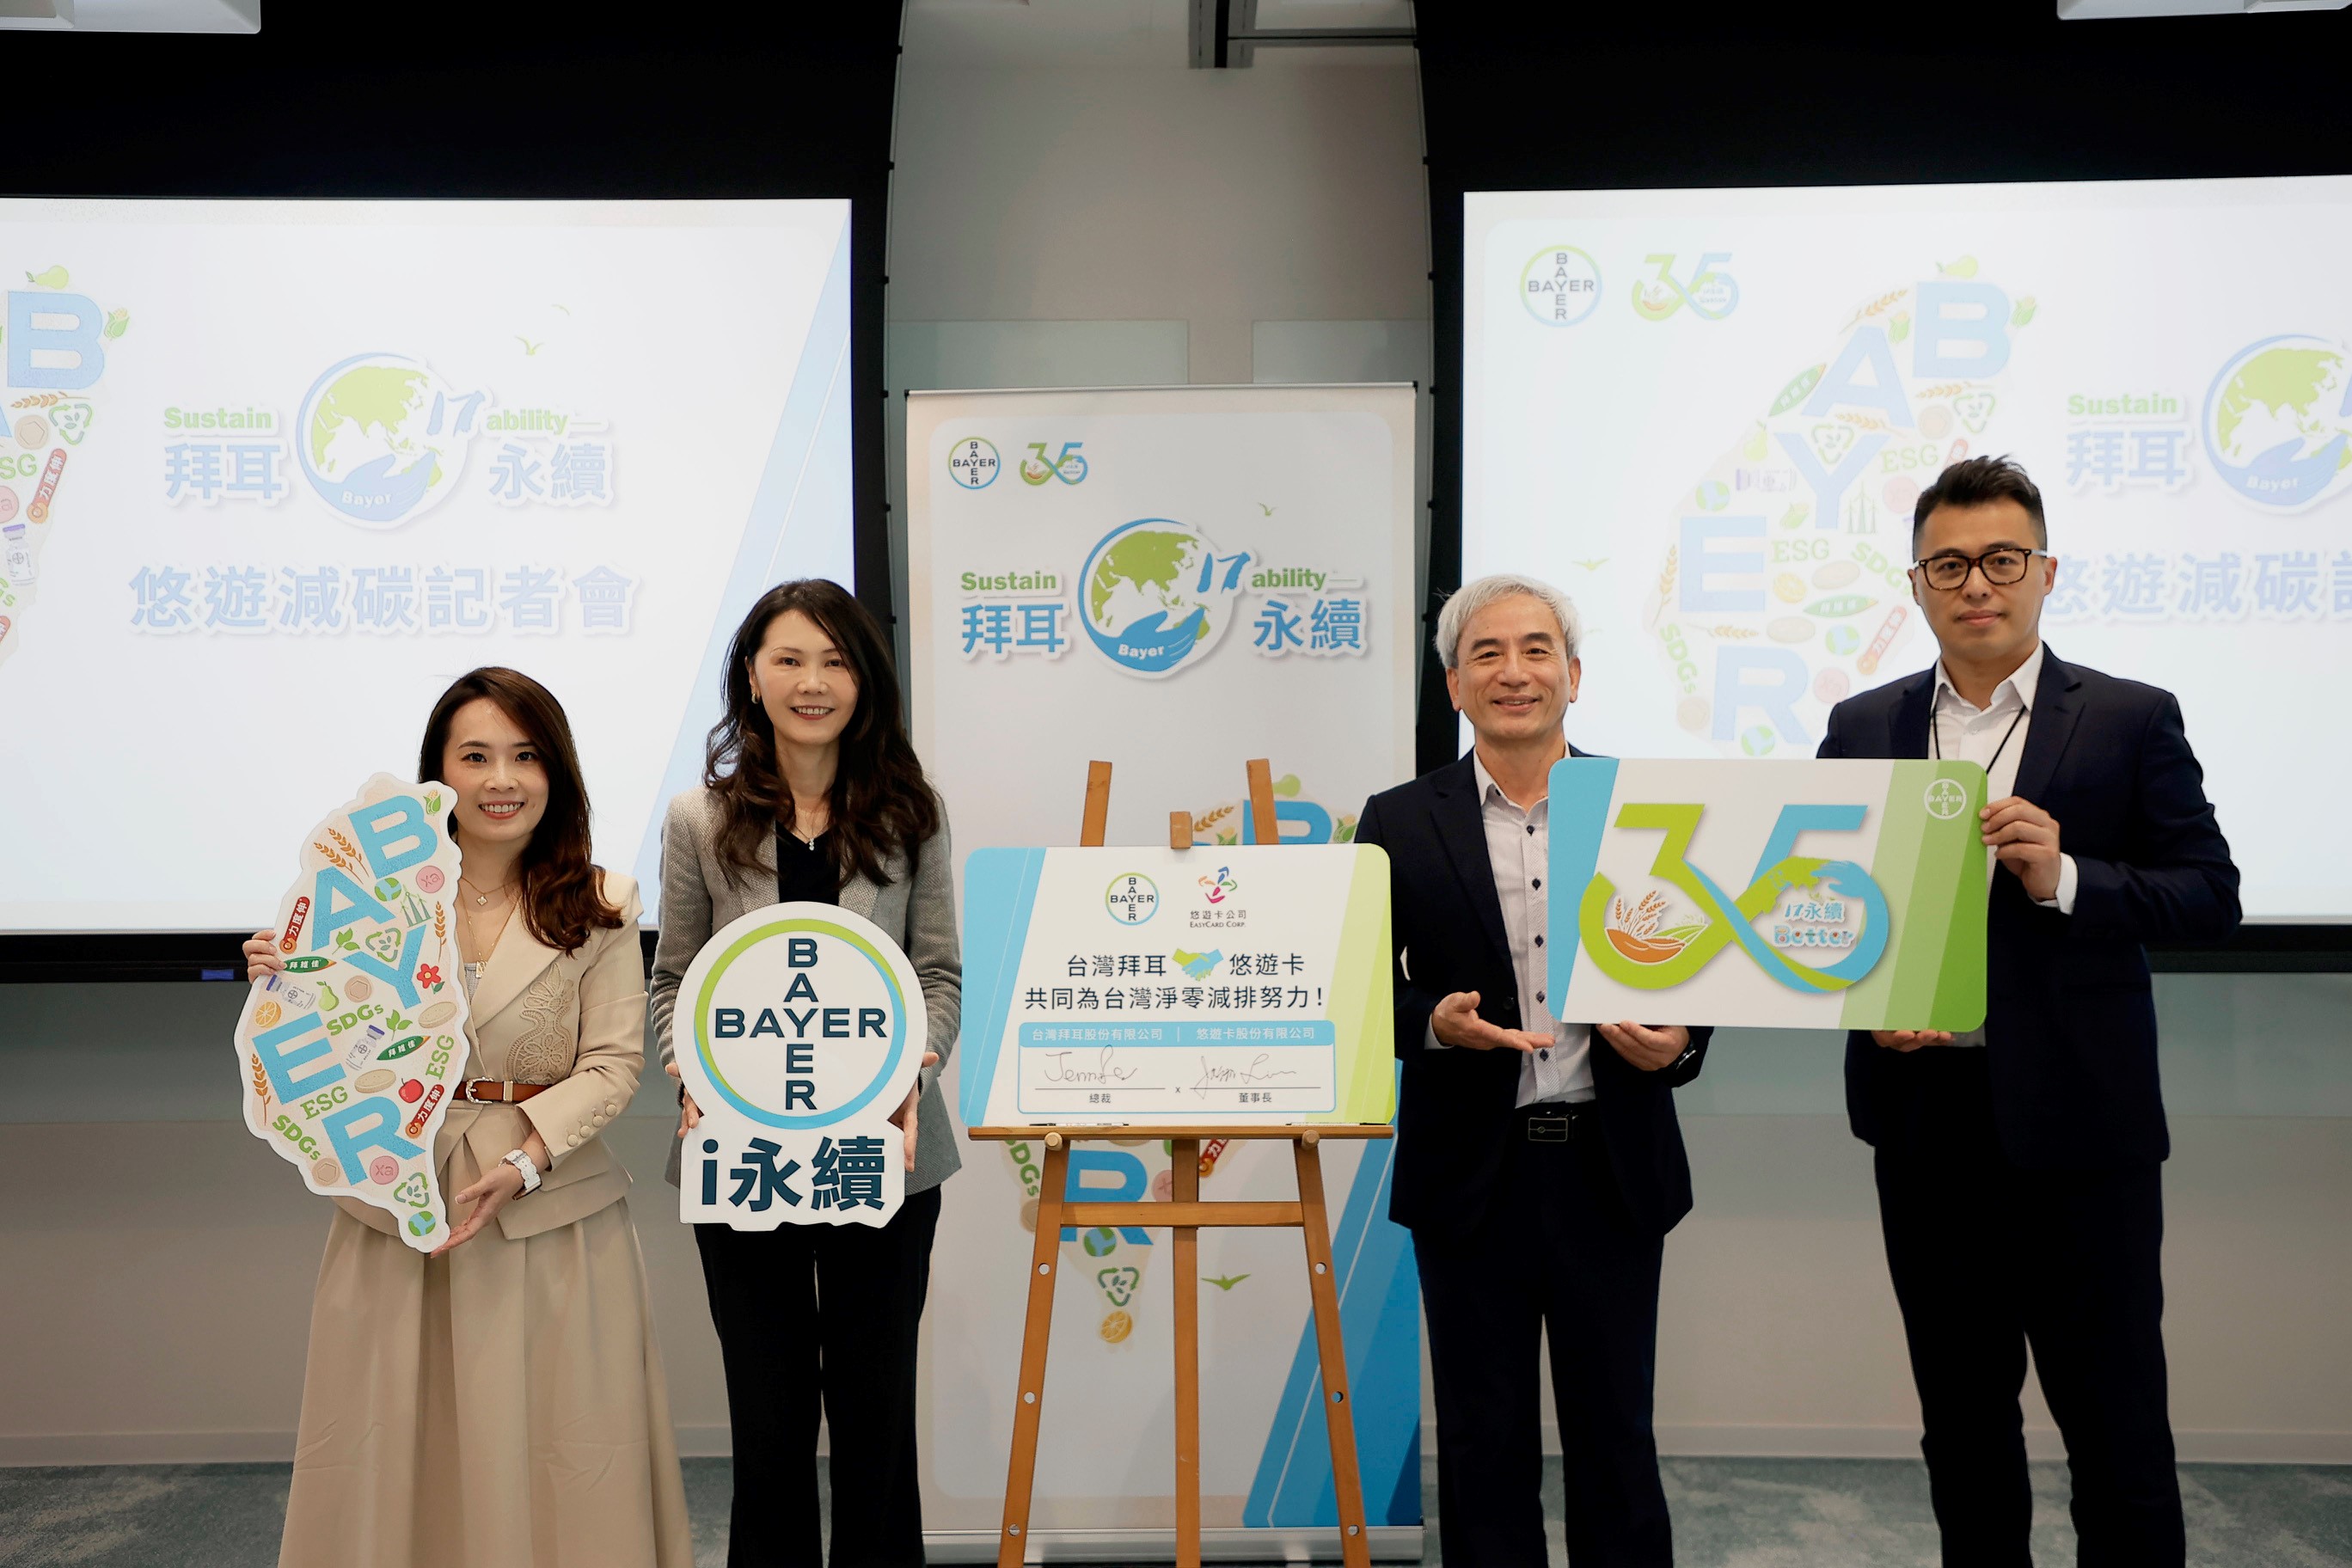 悠遊卡與首家外商台灣拜耳合作 推動員工通勤碳排統計 發行「35週年永續悠遊卡」